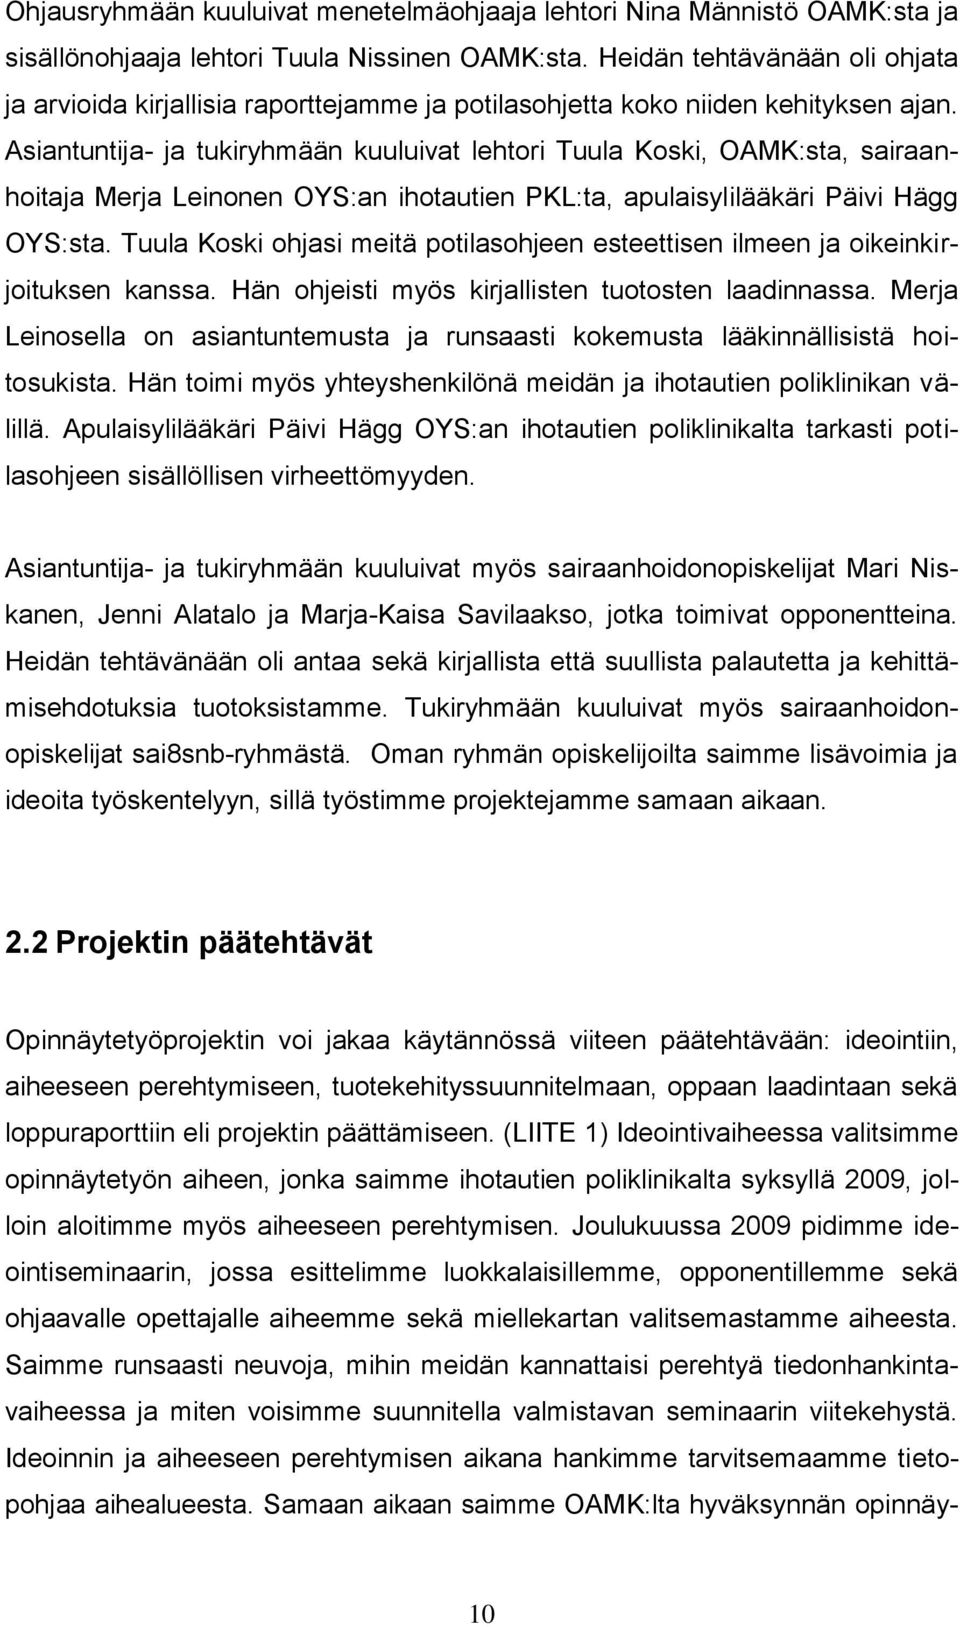 Asiantuntija- ja tukiryhmään kuuluivat lehtori Tuula Koski, OAMK:sta, sairaanhoitaja Merja Leinonen OYS:an ihotautien PKL:ta, apulaisylilääkäri Päivi Hägg OYS:sta.